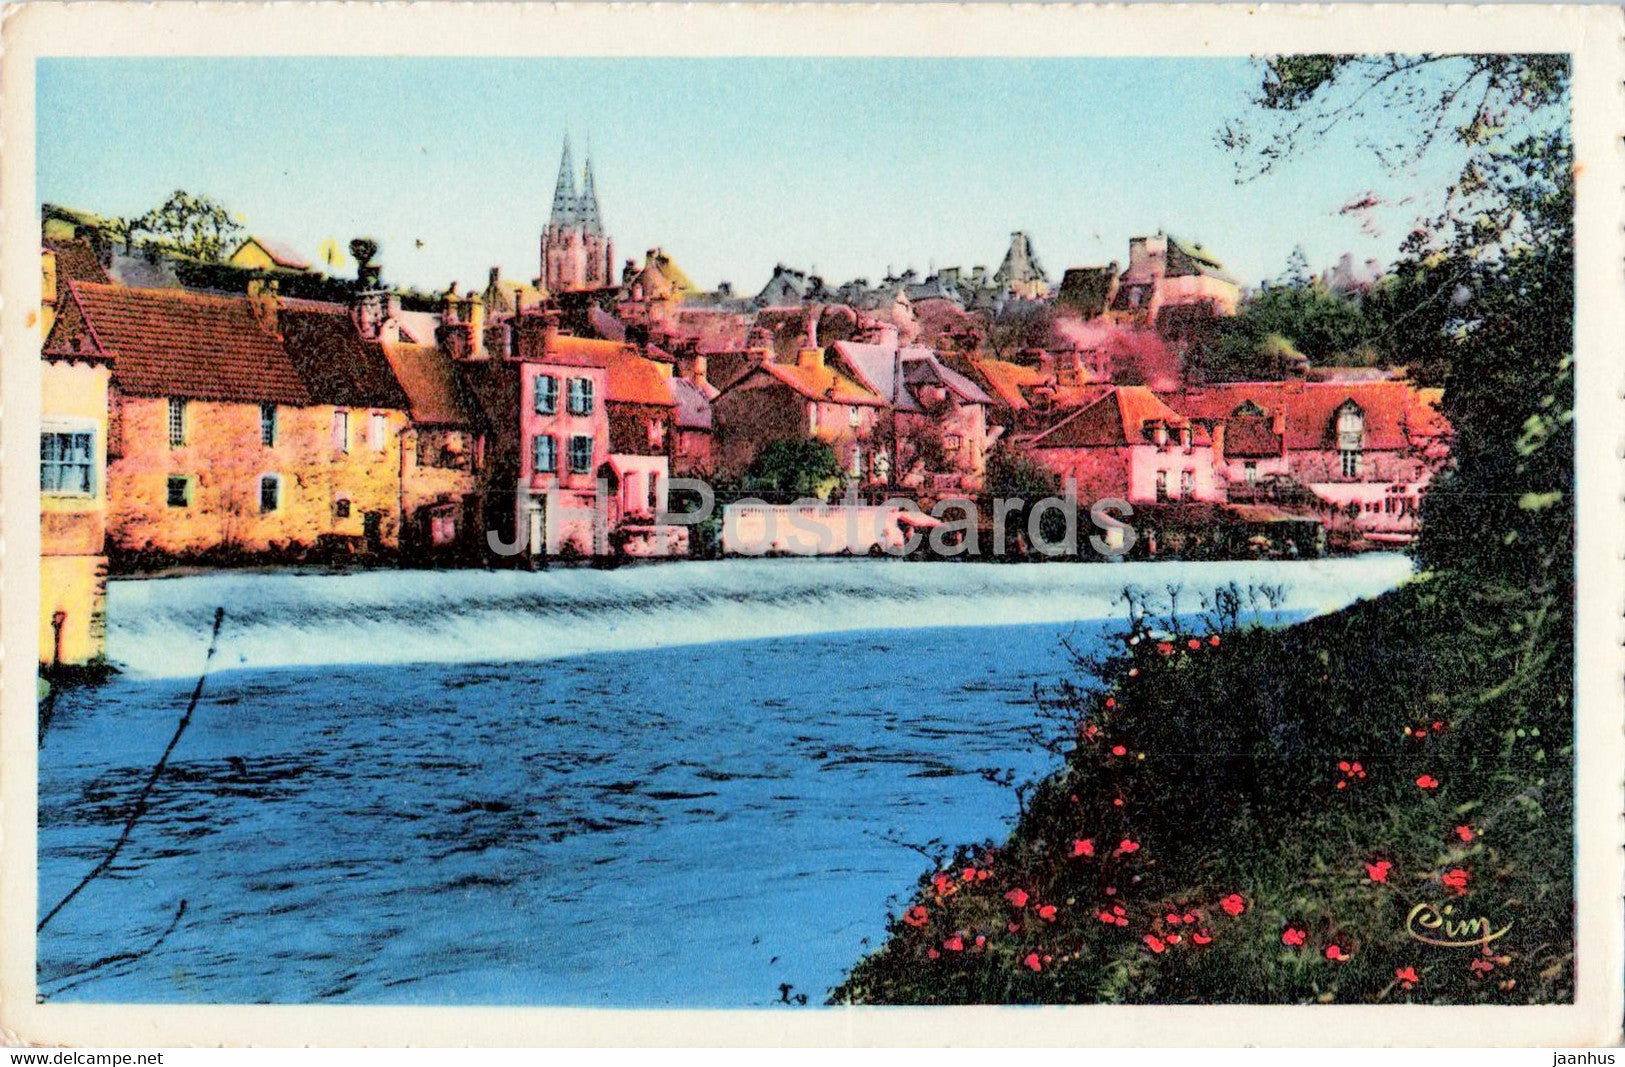 St Lo - Manche - Le Quartier Valvire et la Cathedrale - old postcard - France - unused - JH Postcards